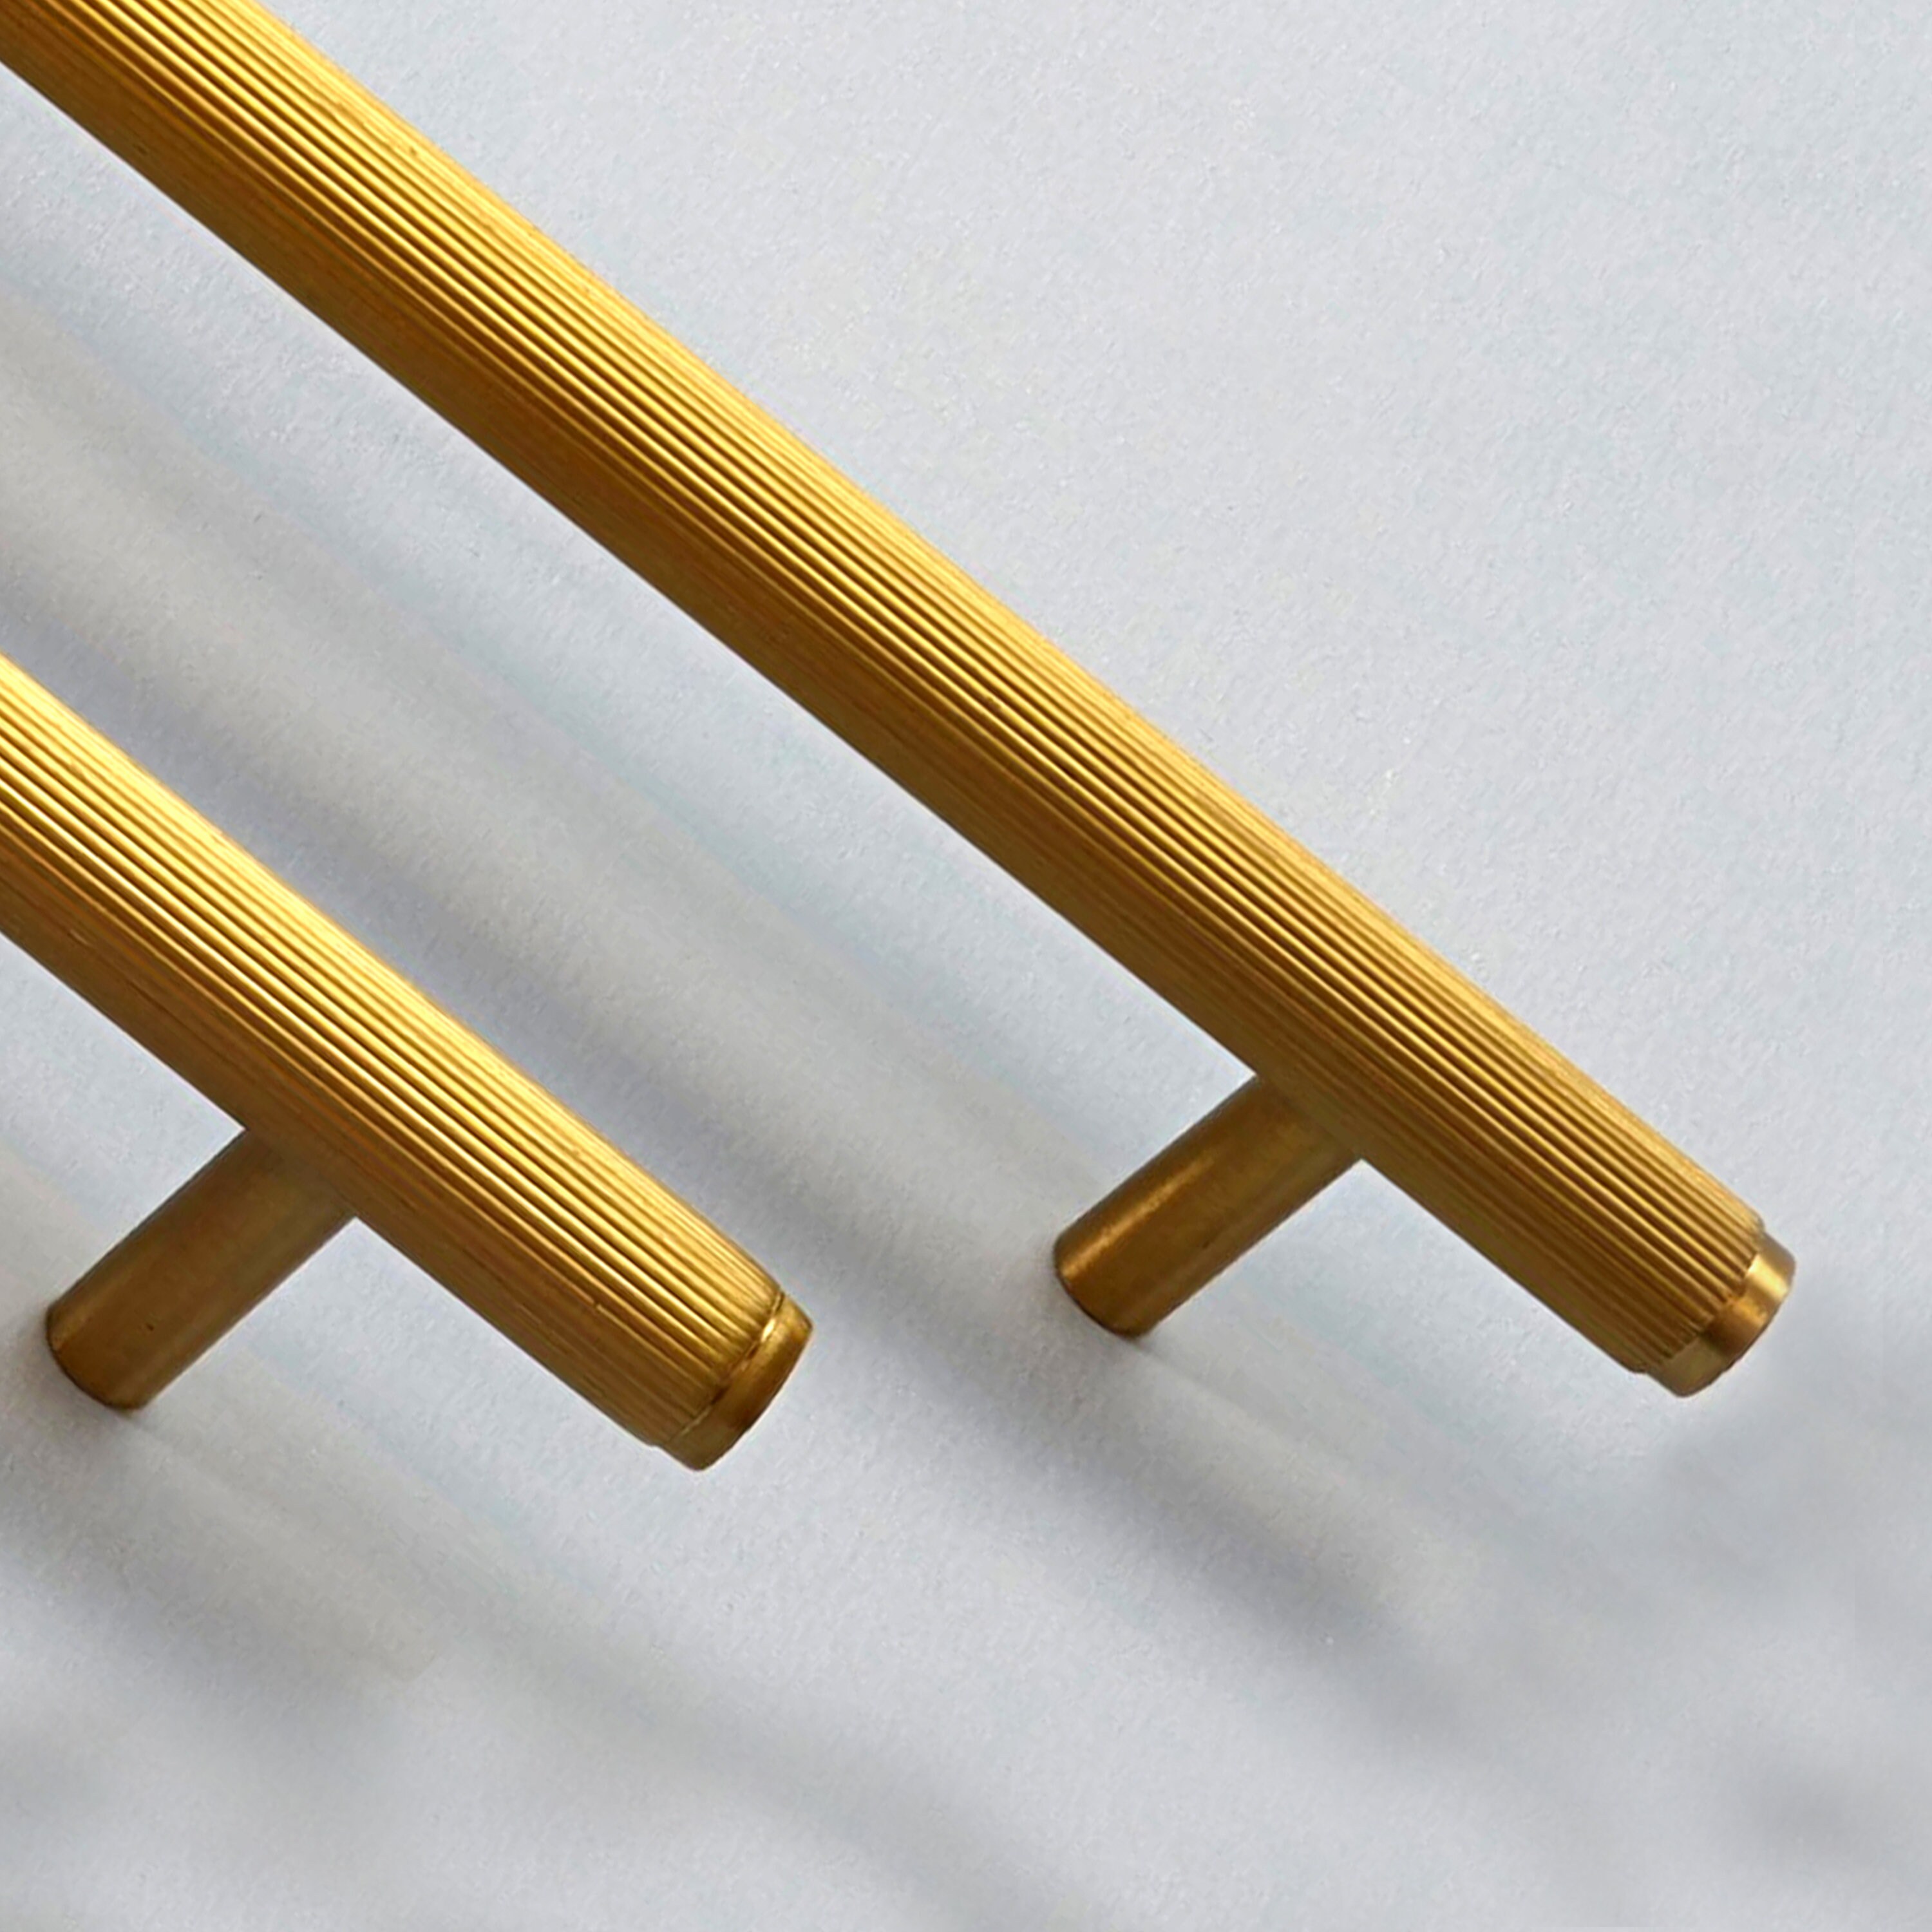 Tirador mueble INSPIRE amarillo / dorado distancia entre eje 128 mm